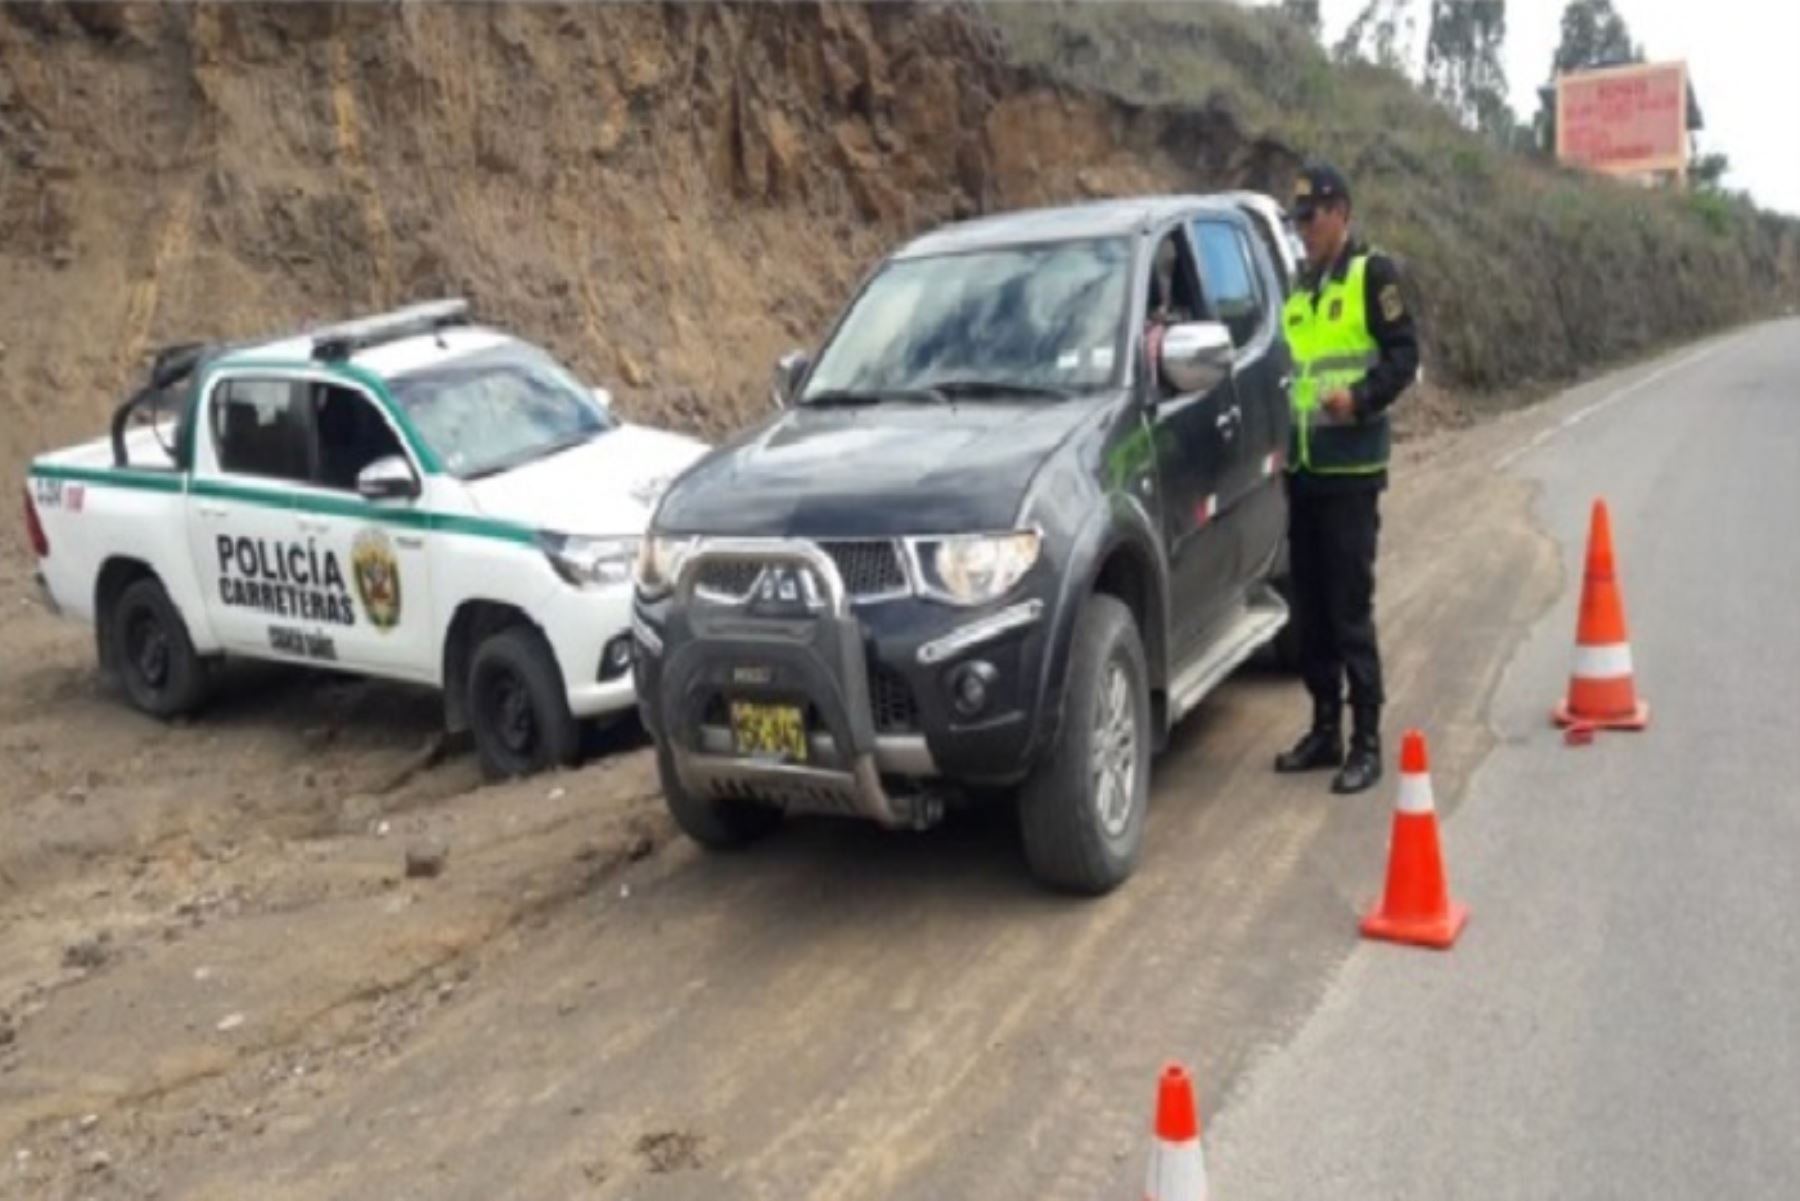 Unidad de Protección de Carreteras de la Policía Nacional del Perú (PNP) de Chiclayo, región Lambayeque, ejecutó en los últimos días una serie de operativos en diferentes puntos críticos, con el objetivo de generar un impacto positivo en la seguridad ciudadana al norte del país